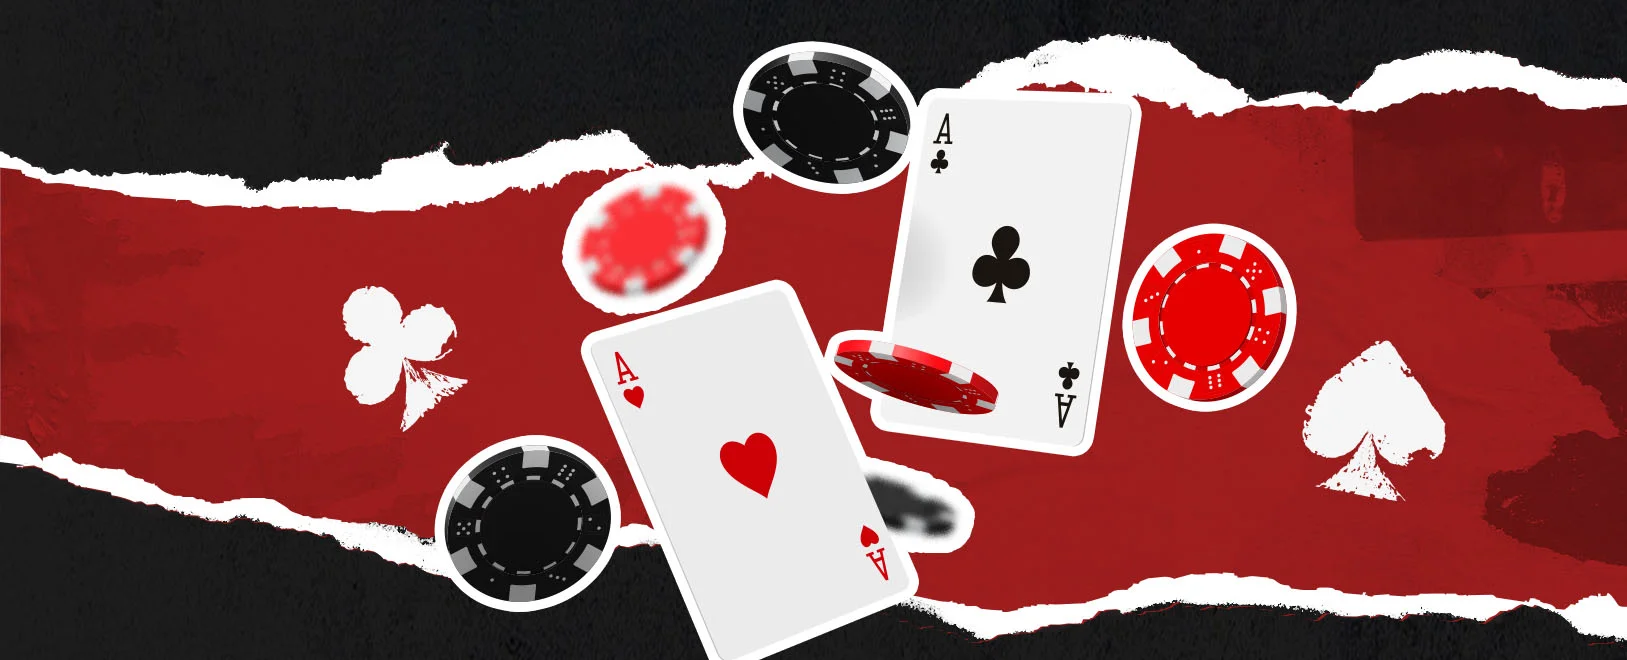 Blackjack Strategies: Double Down